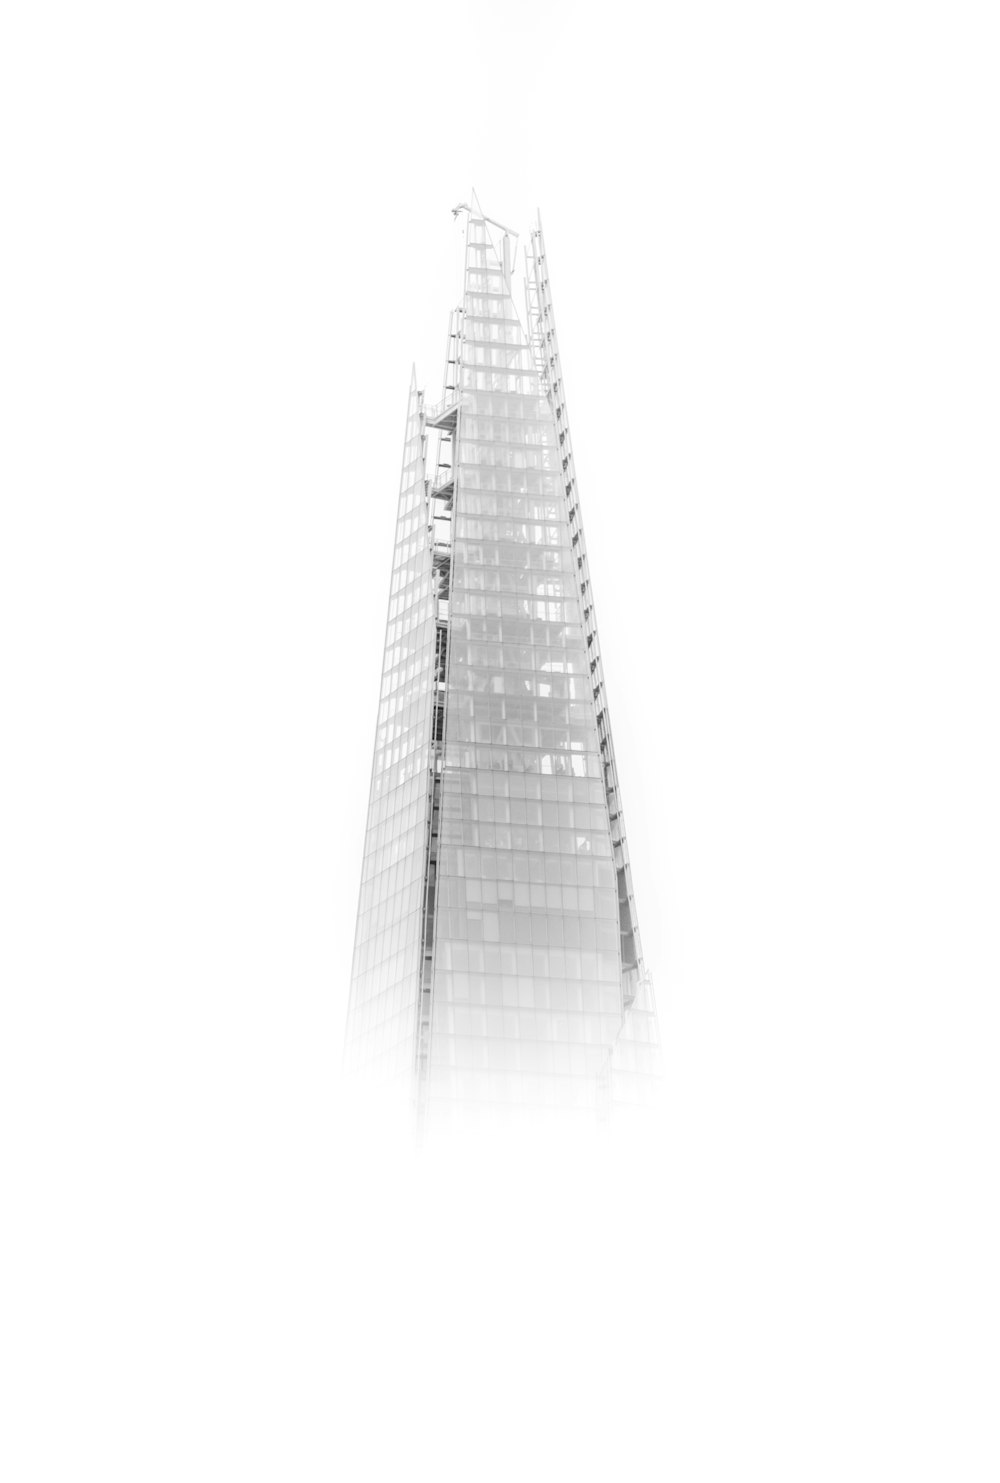 grattacielo con nebbie